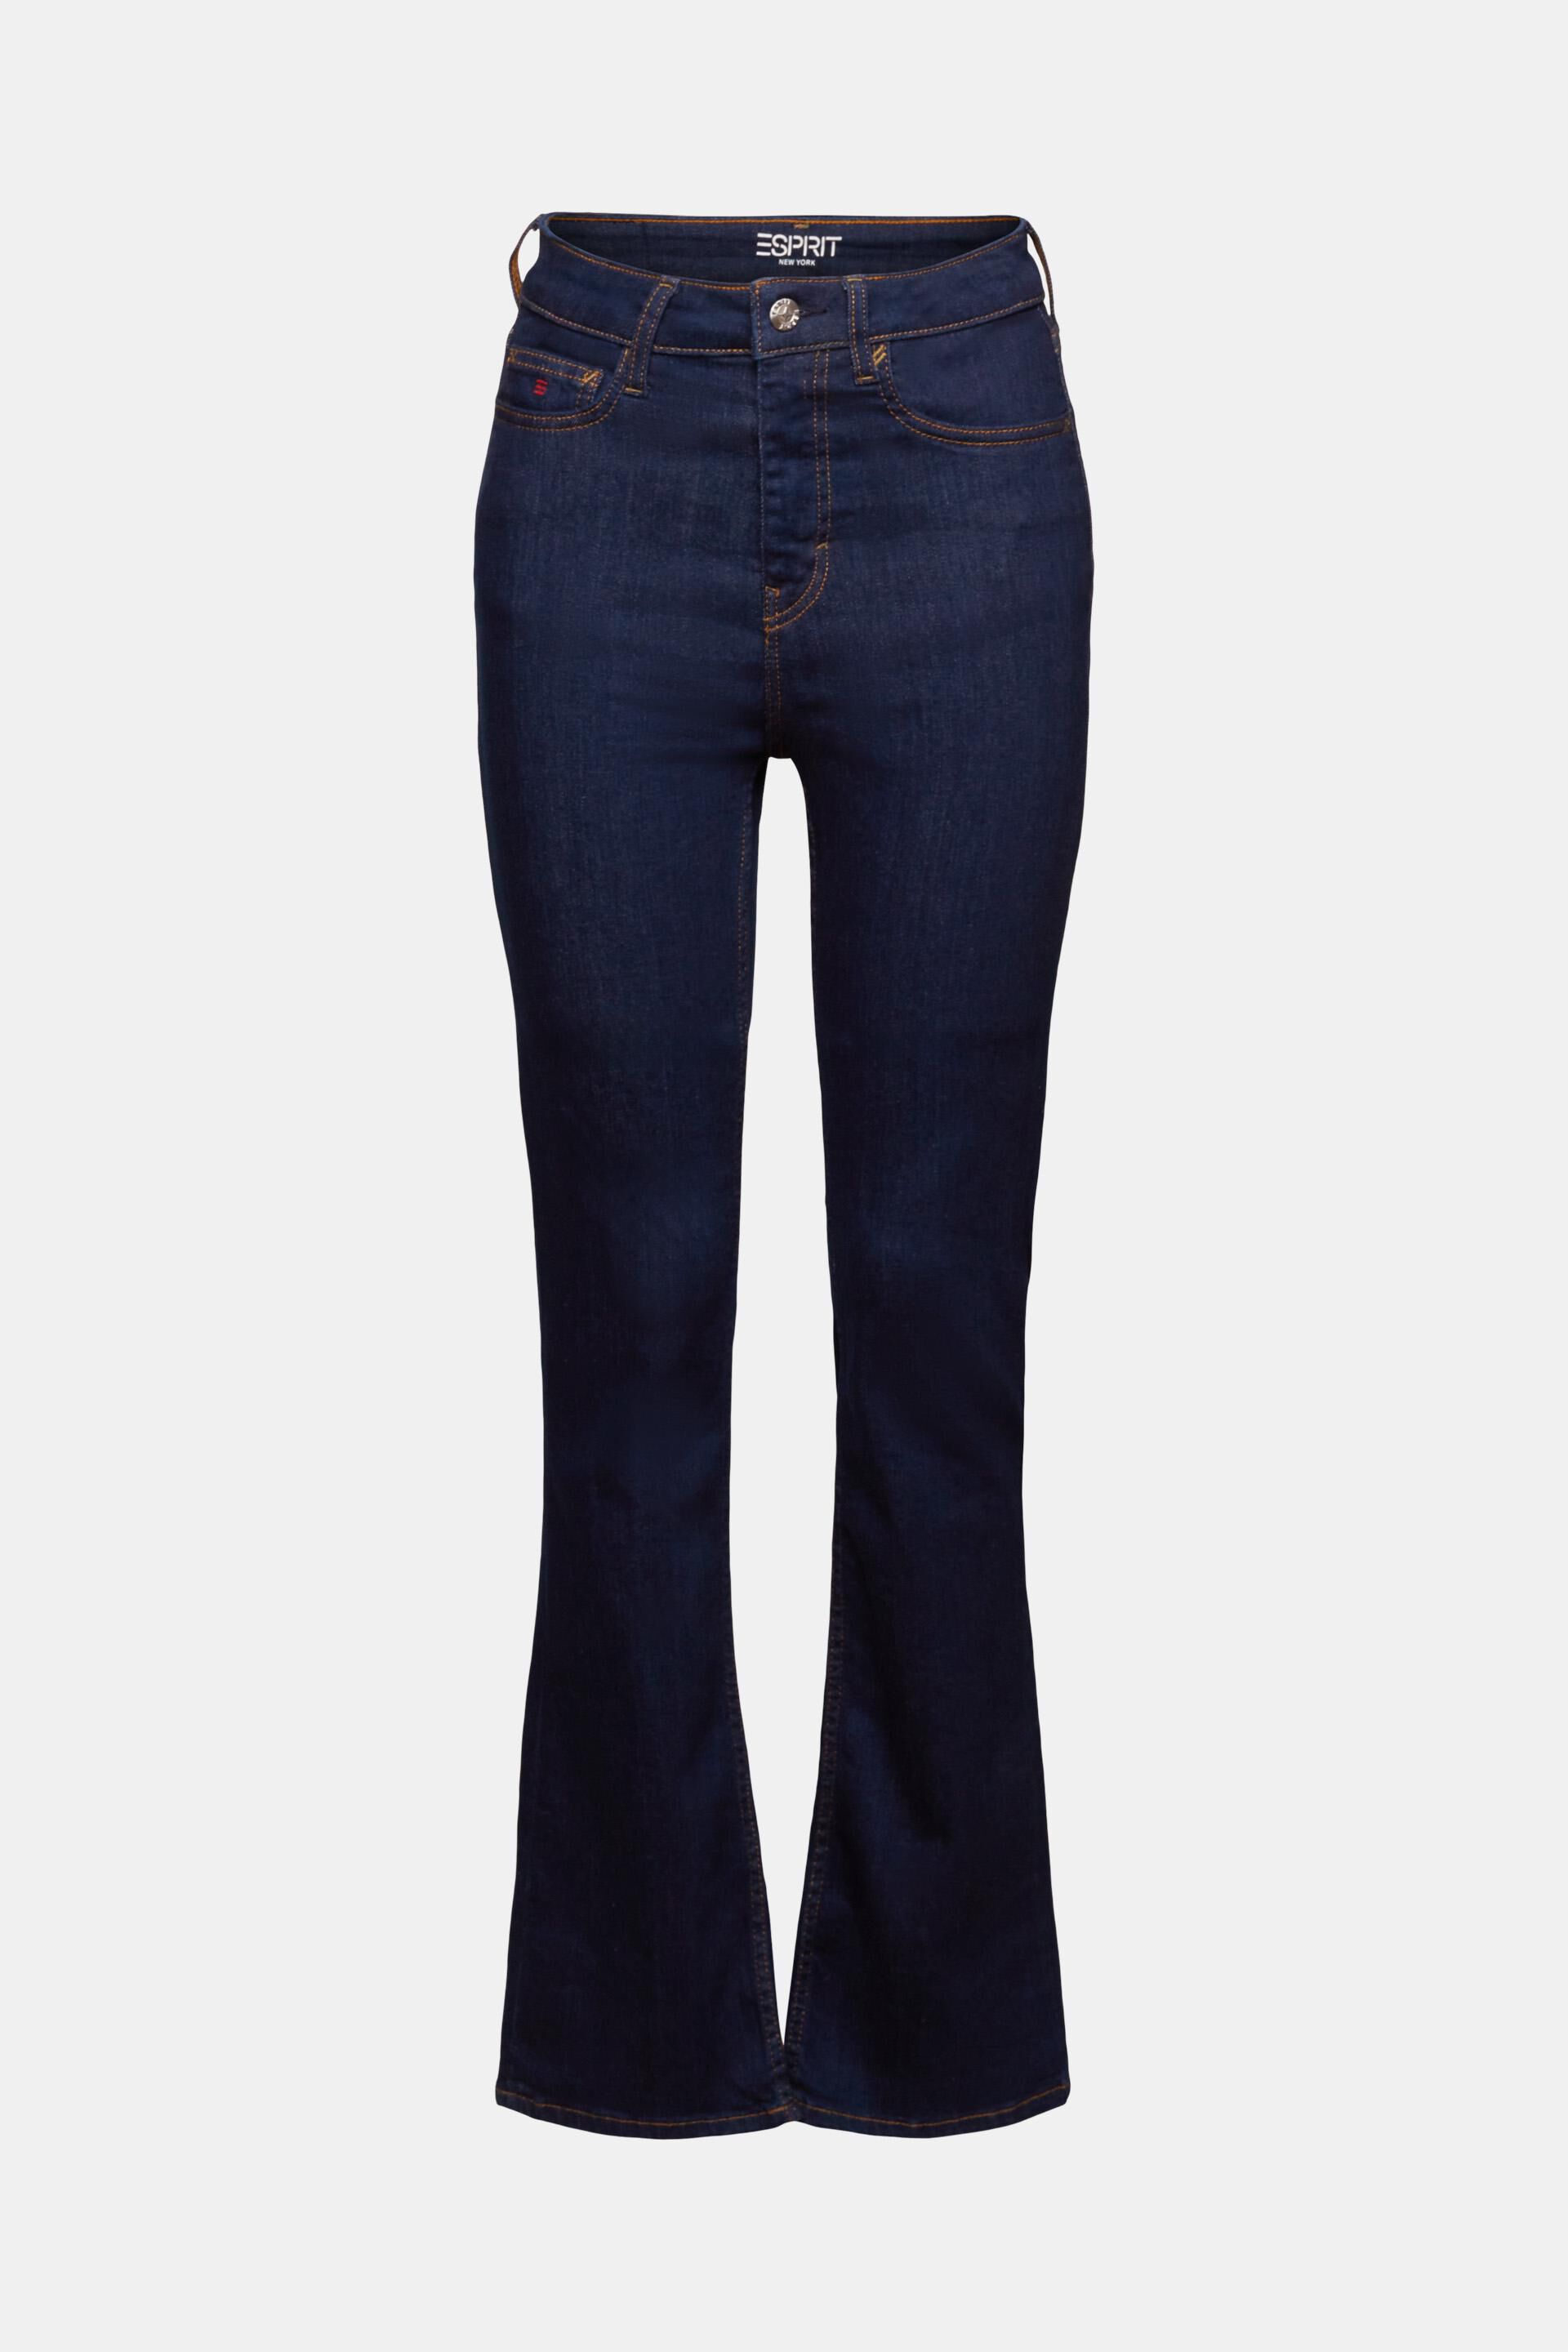 Esprit Damen Hochwertige Bootcut-Jeans mit Bund hohem